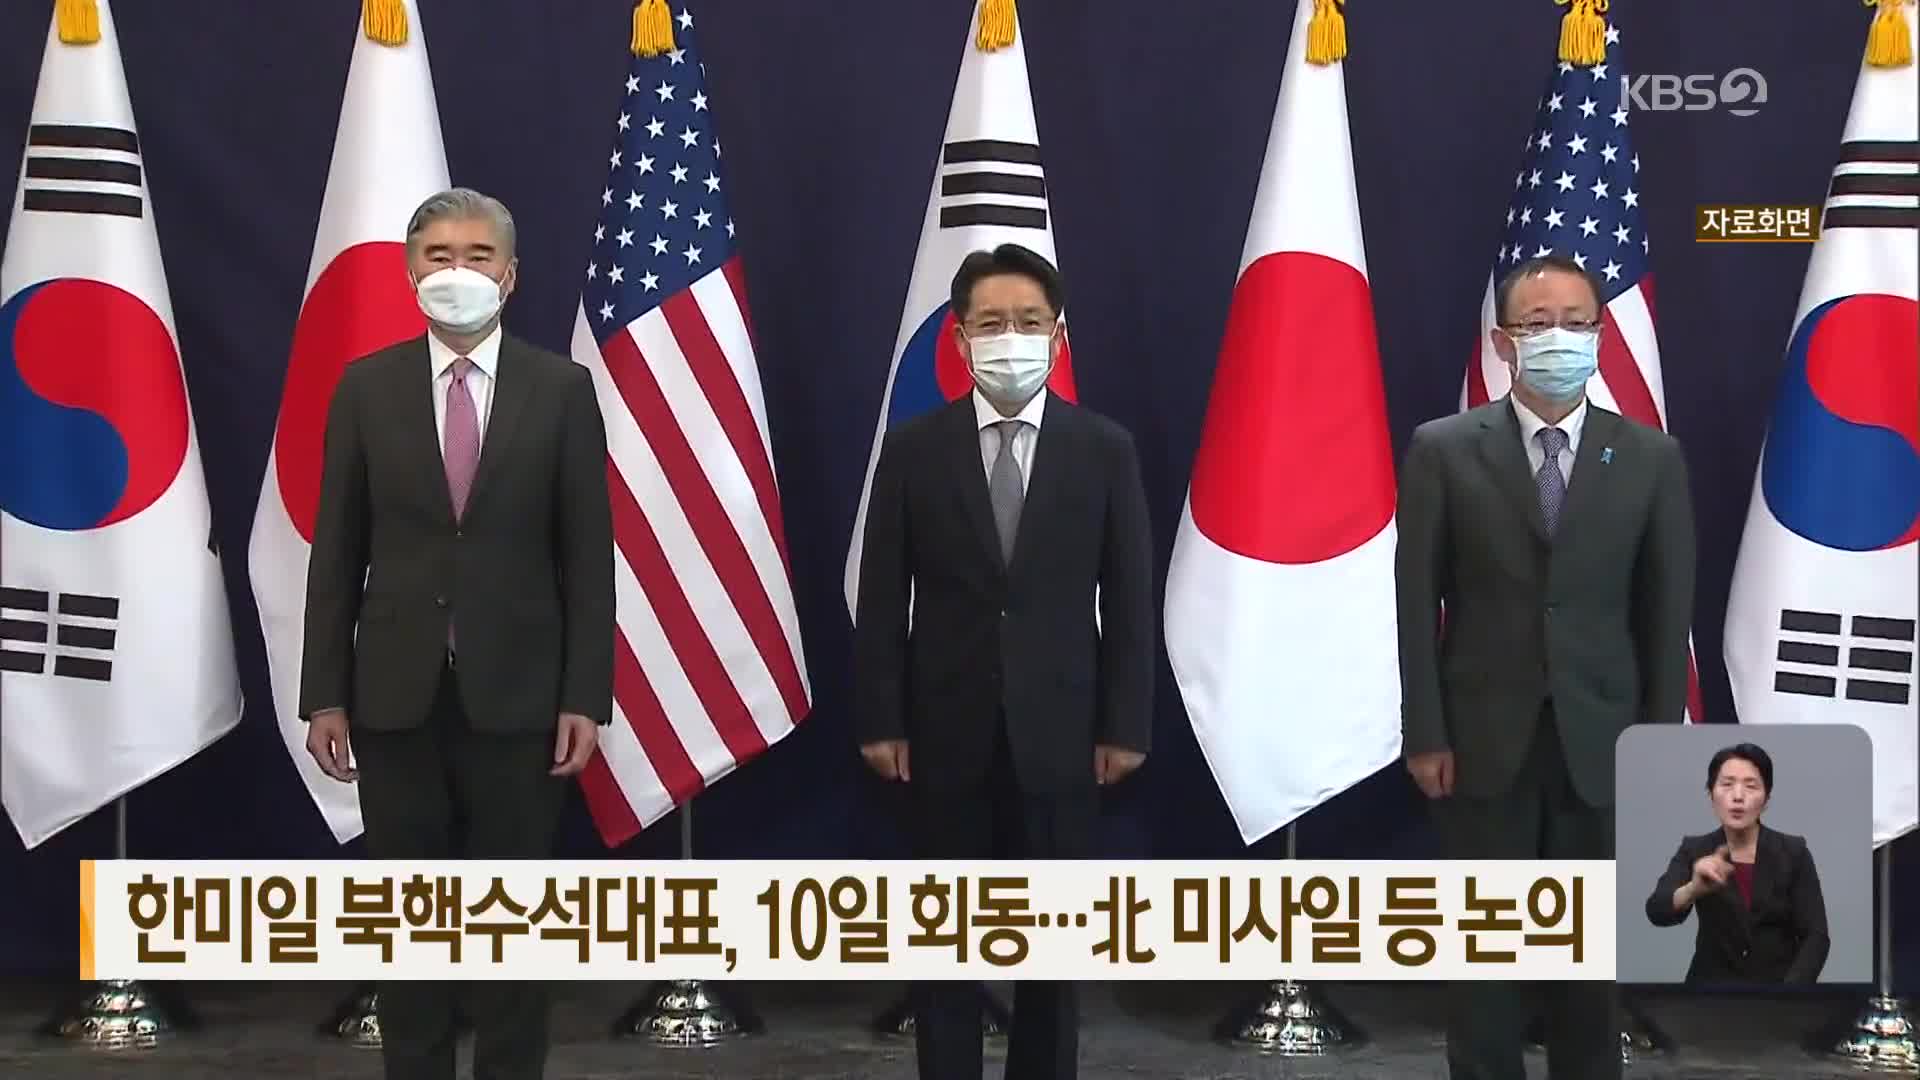 한미일 북핵수석대표, 10일 회동…北 미사일 등 논의